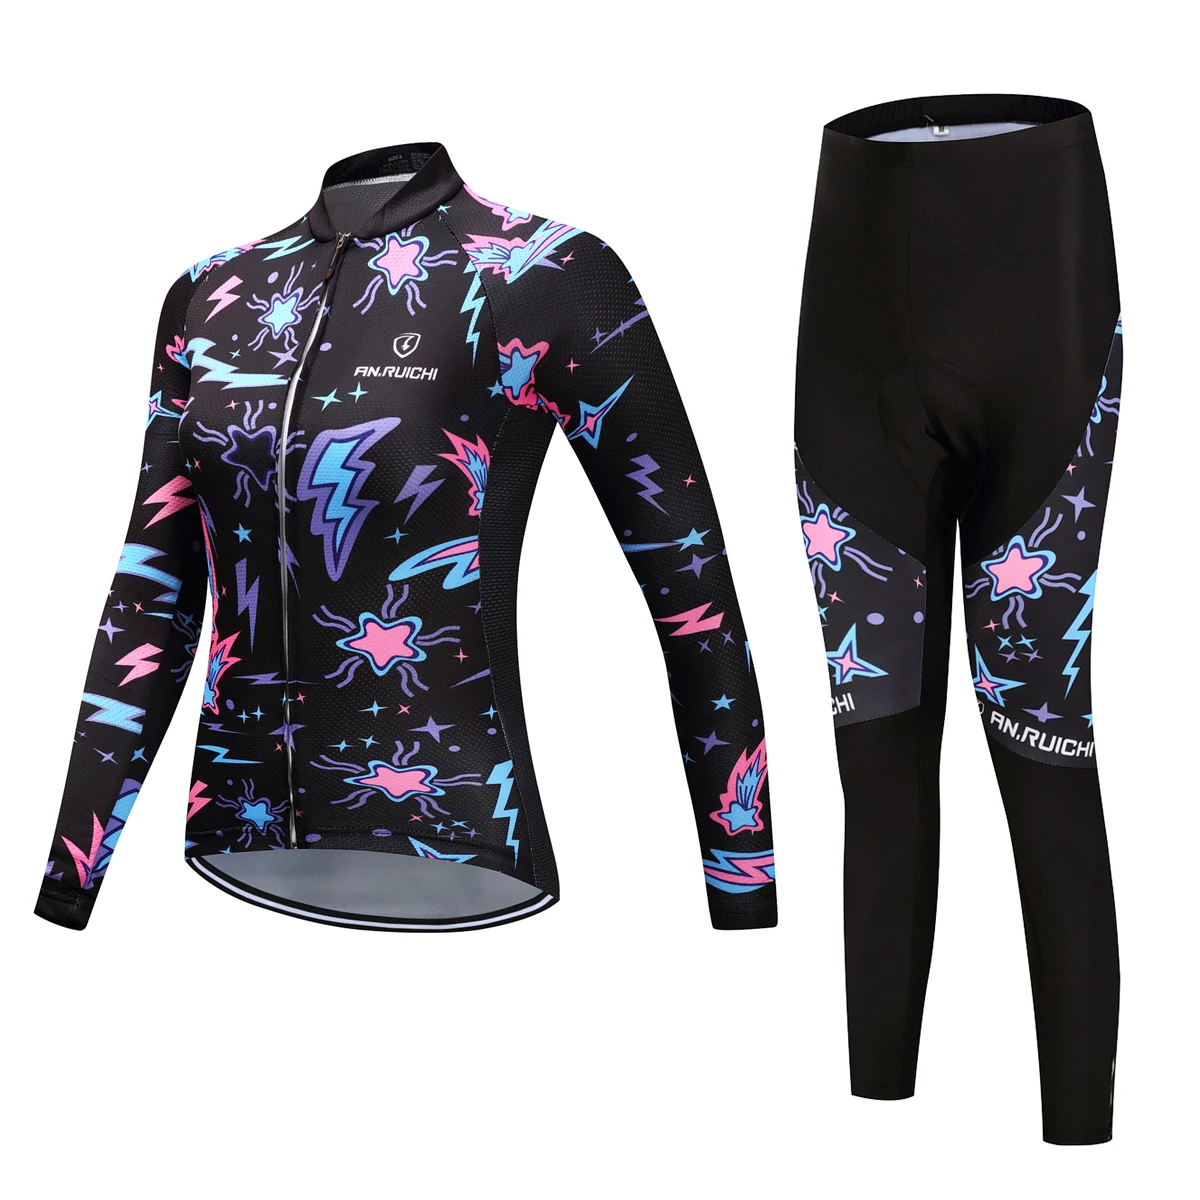 Осень 2021, Женский комплект из Джерси с длинным рукавом для езды на велосипеде, одежда для езды на горном велосипеде, костюм ANRUICHI, кожаный кос...